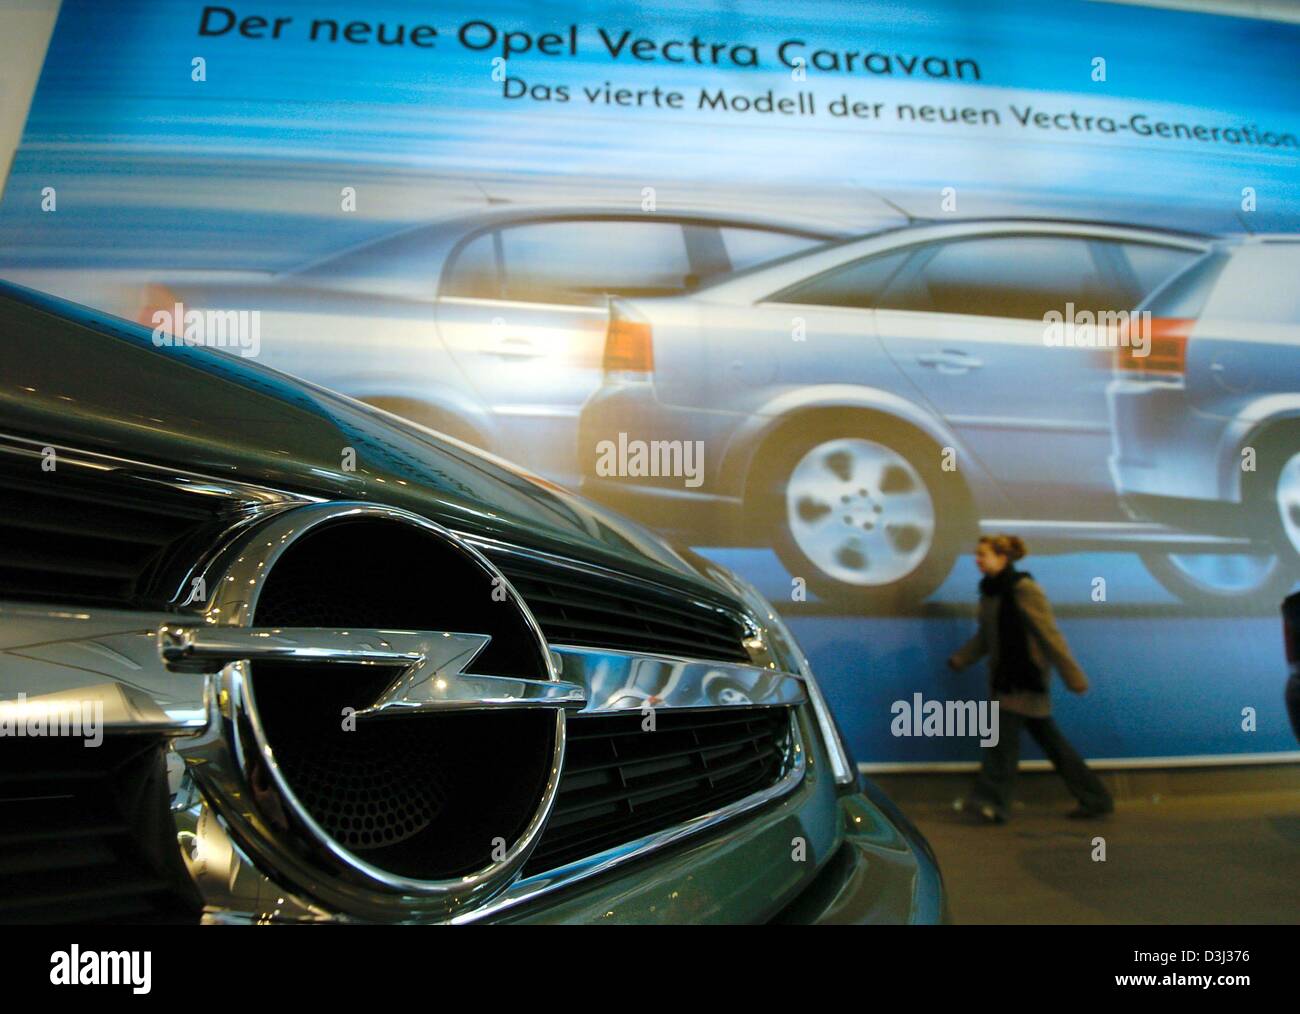 Opel advertising Banque de photographies et d'images à haute ...